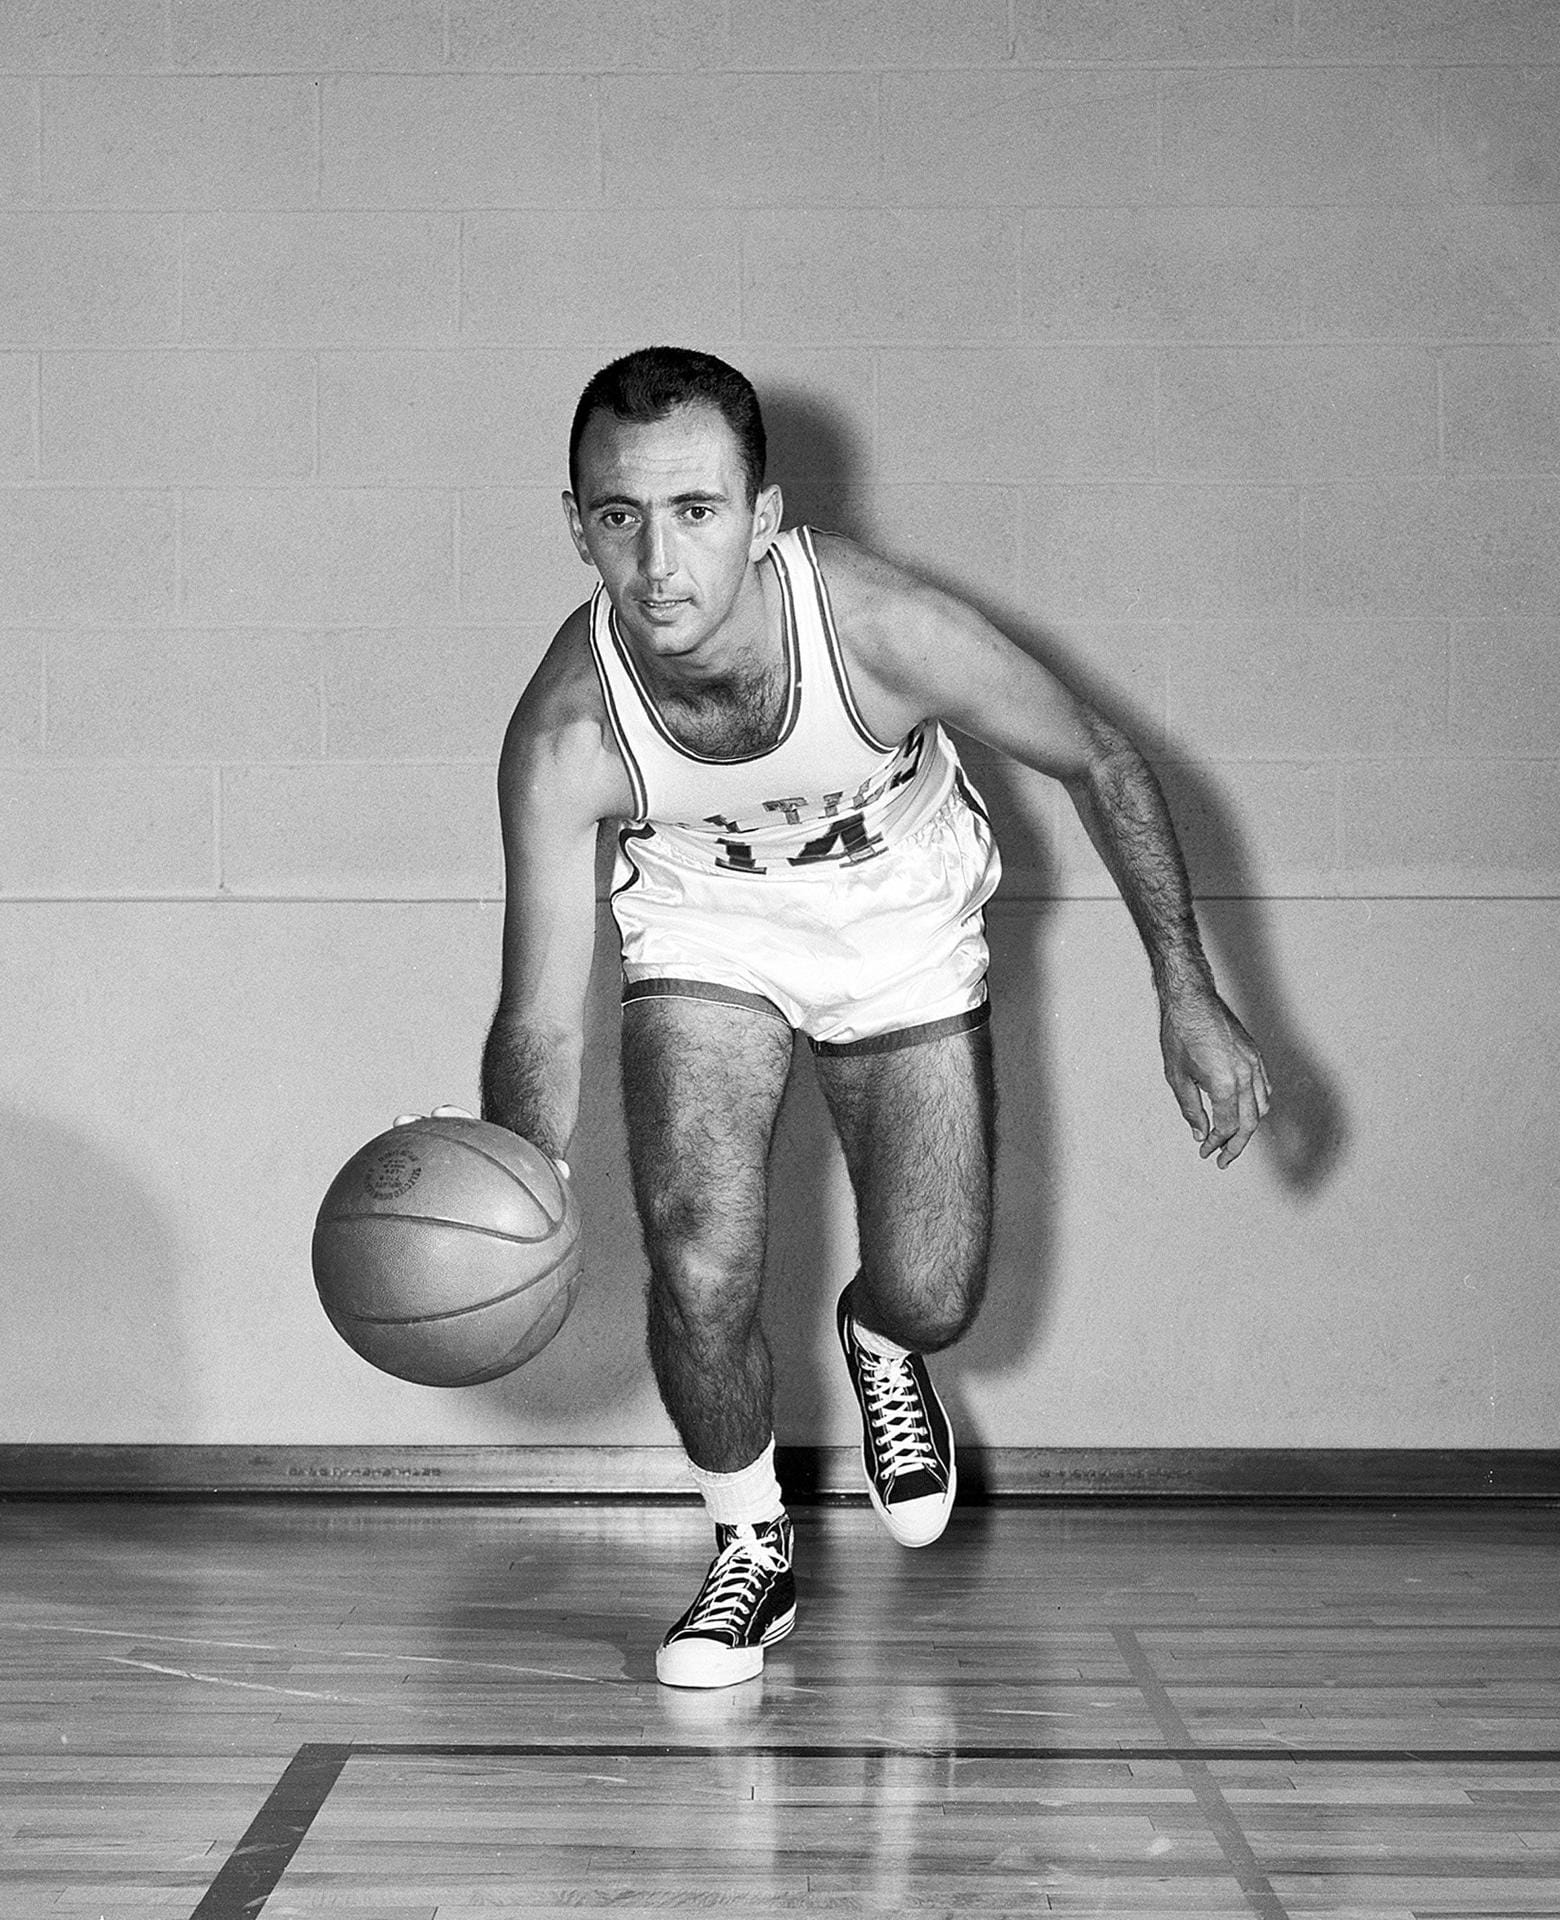 Bob Cousy (1950 - '63, '69 - '70) war der herausragende Aufbauspieler seiner Zeit. Sechsmal gewann er mit seinen Boston Celtics die NBA-Meisterschaft. '57 wurde er zum MVP gewählt. "Mr. Basketball" war ein fantastischer Passgeber und setzte neue Maßstäbe auf der Position des Point Guards. Acht Mal in Folge führte Cousy die Liga in der Kategorie Assists an.